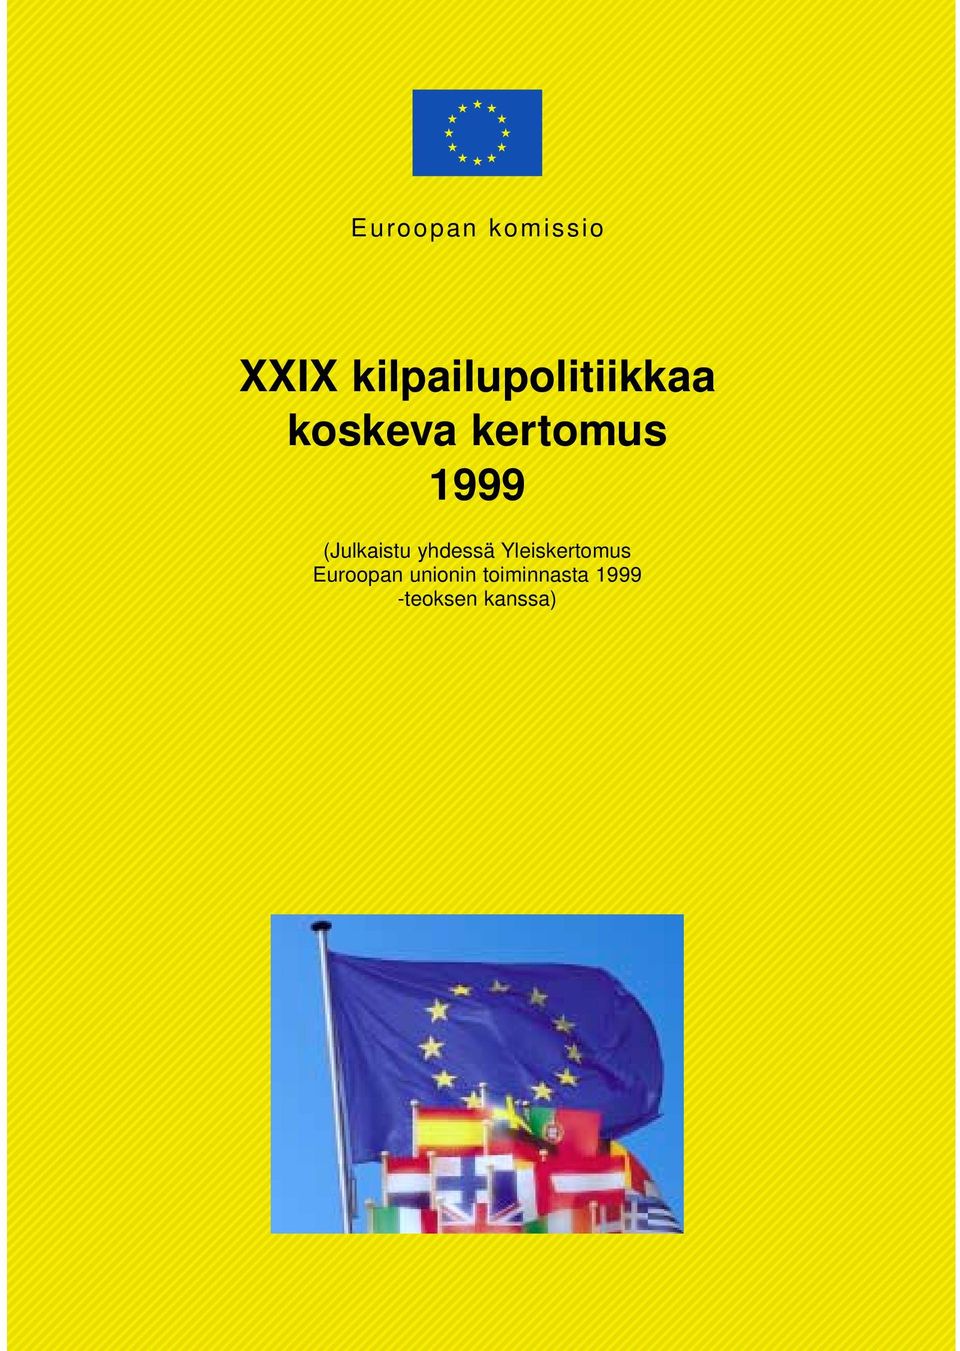 1999 (Julkaistu yhdessä